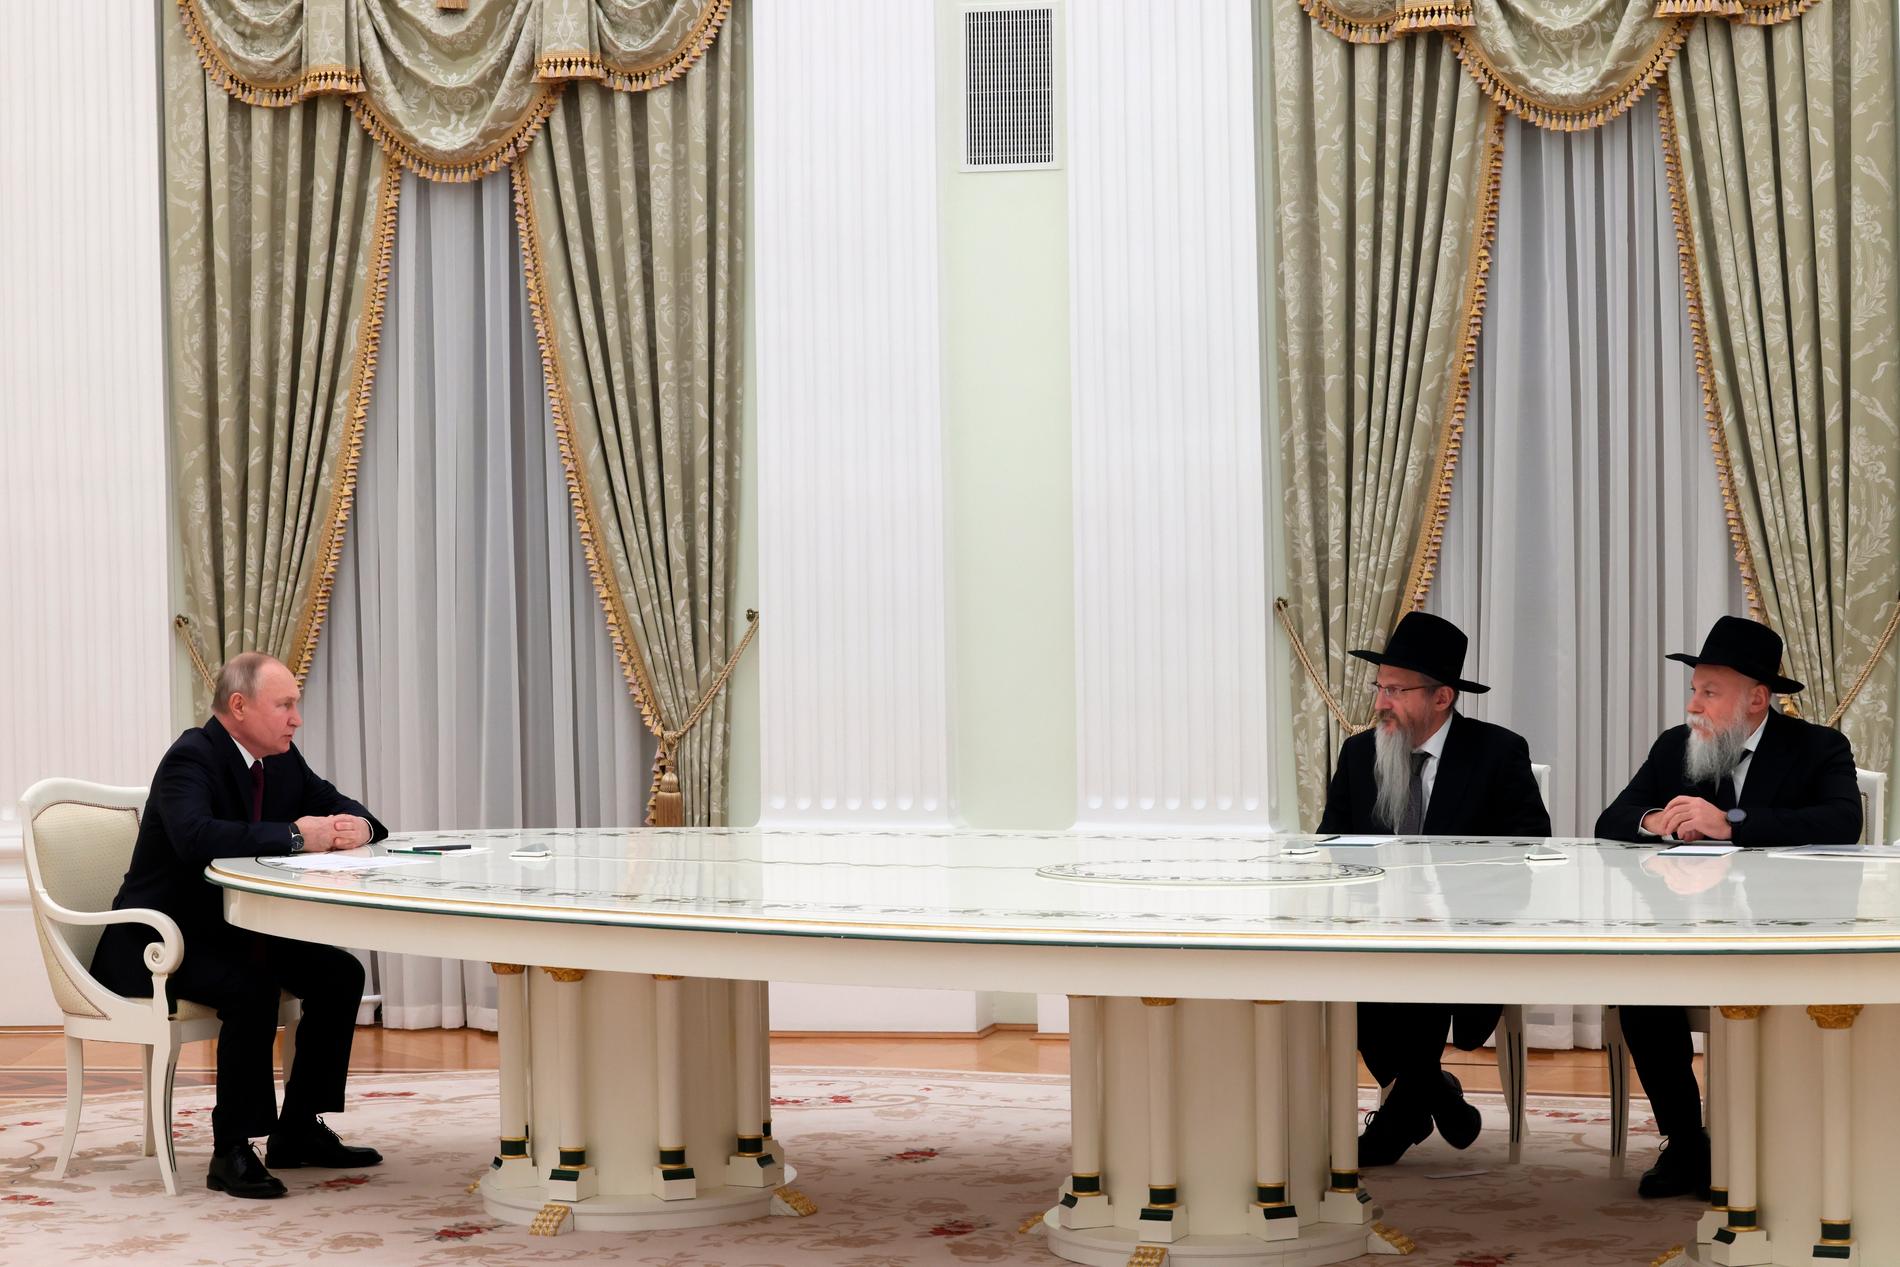 Rysslands president Vladimir Putin (till vänster) med två representanter för Rysslands judiska församlingar och grupper, rabbin Berl Lazar och Alexander Boroda.